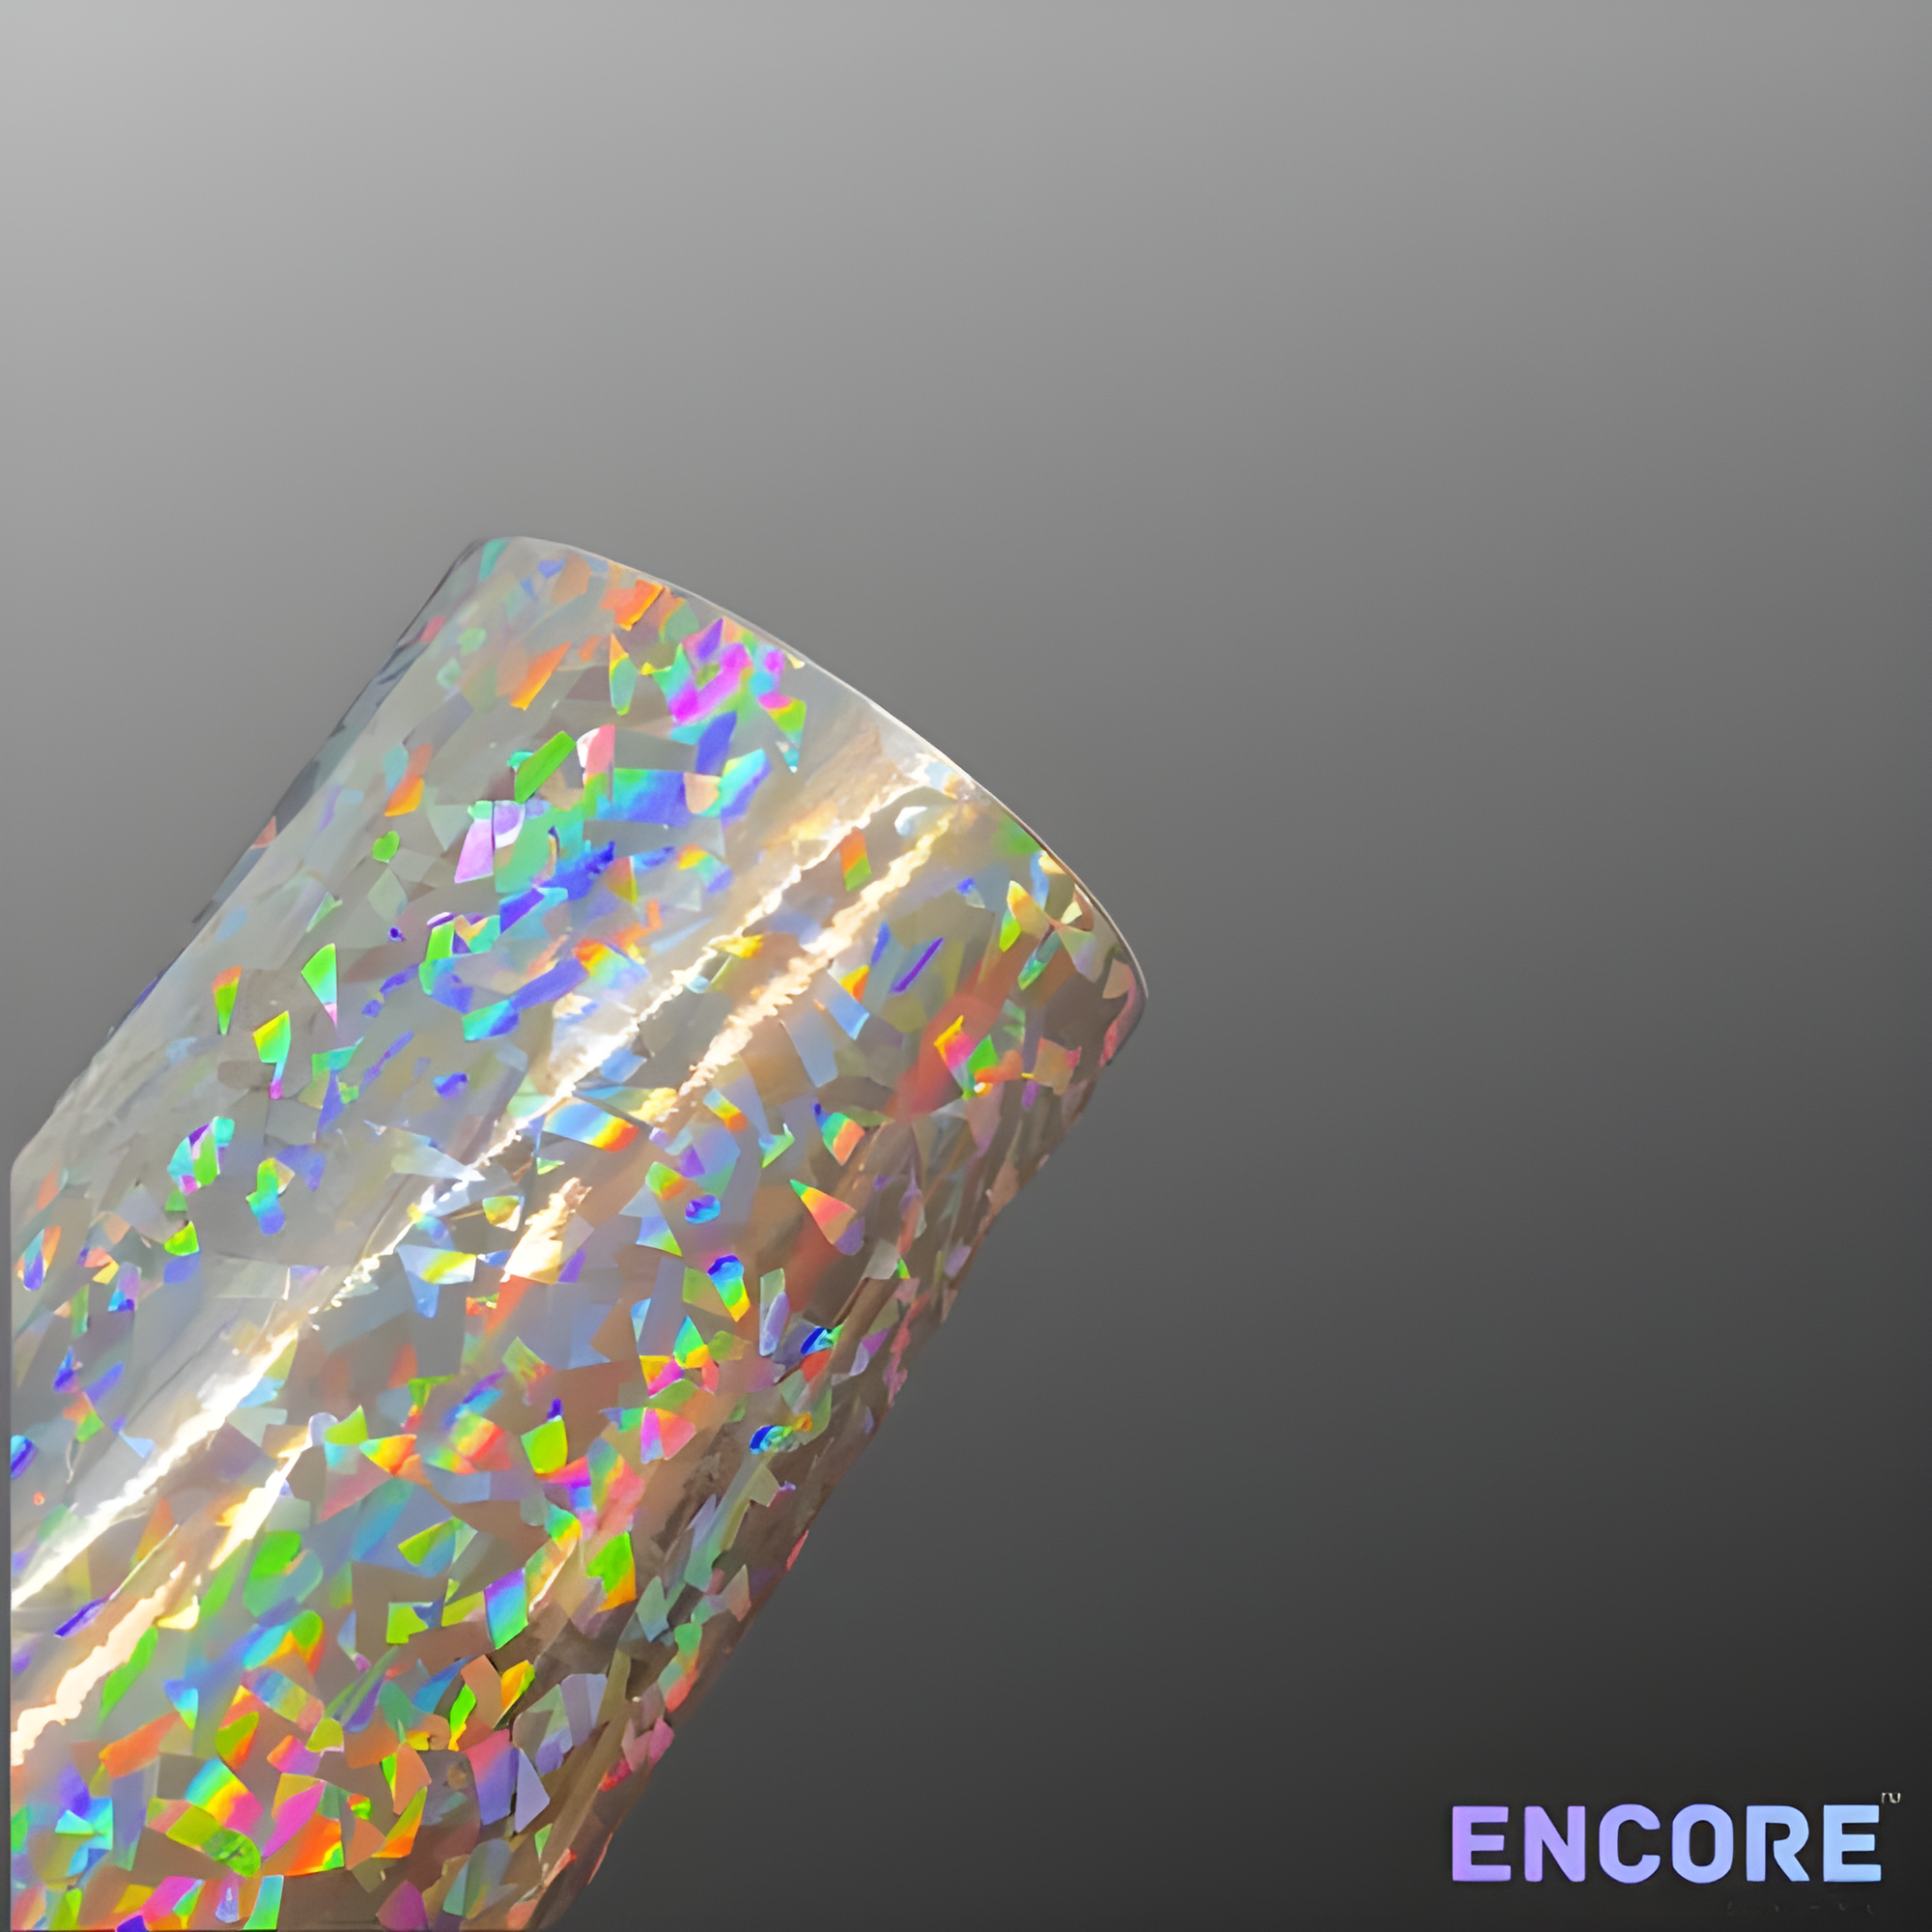 Vinilo adhesivo holográfico de cristal plateado Encore® EFX21